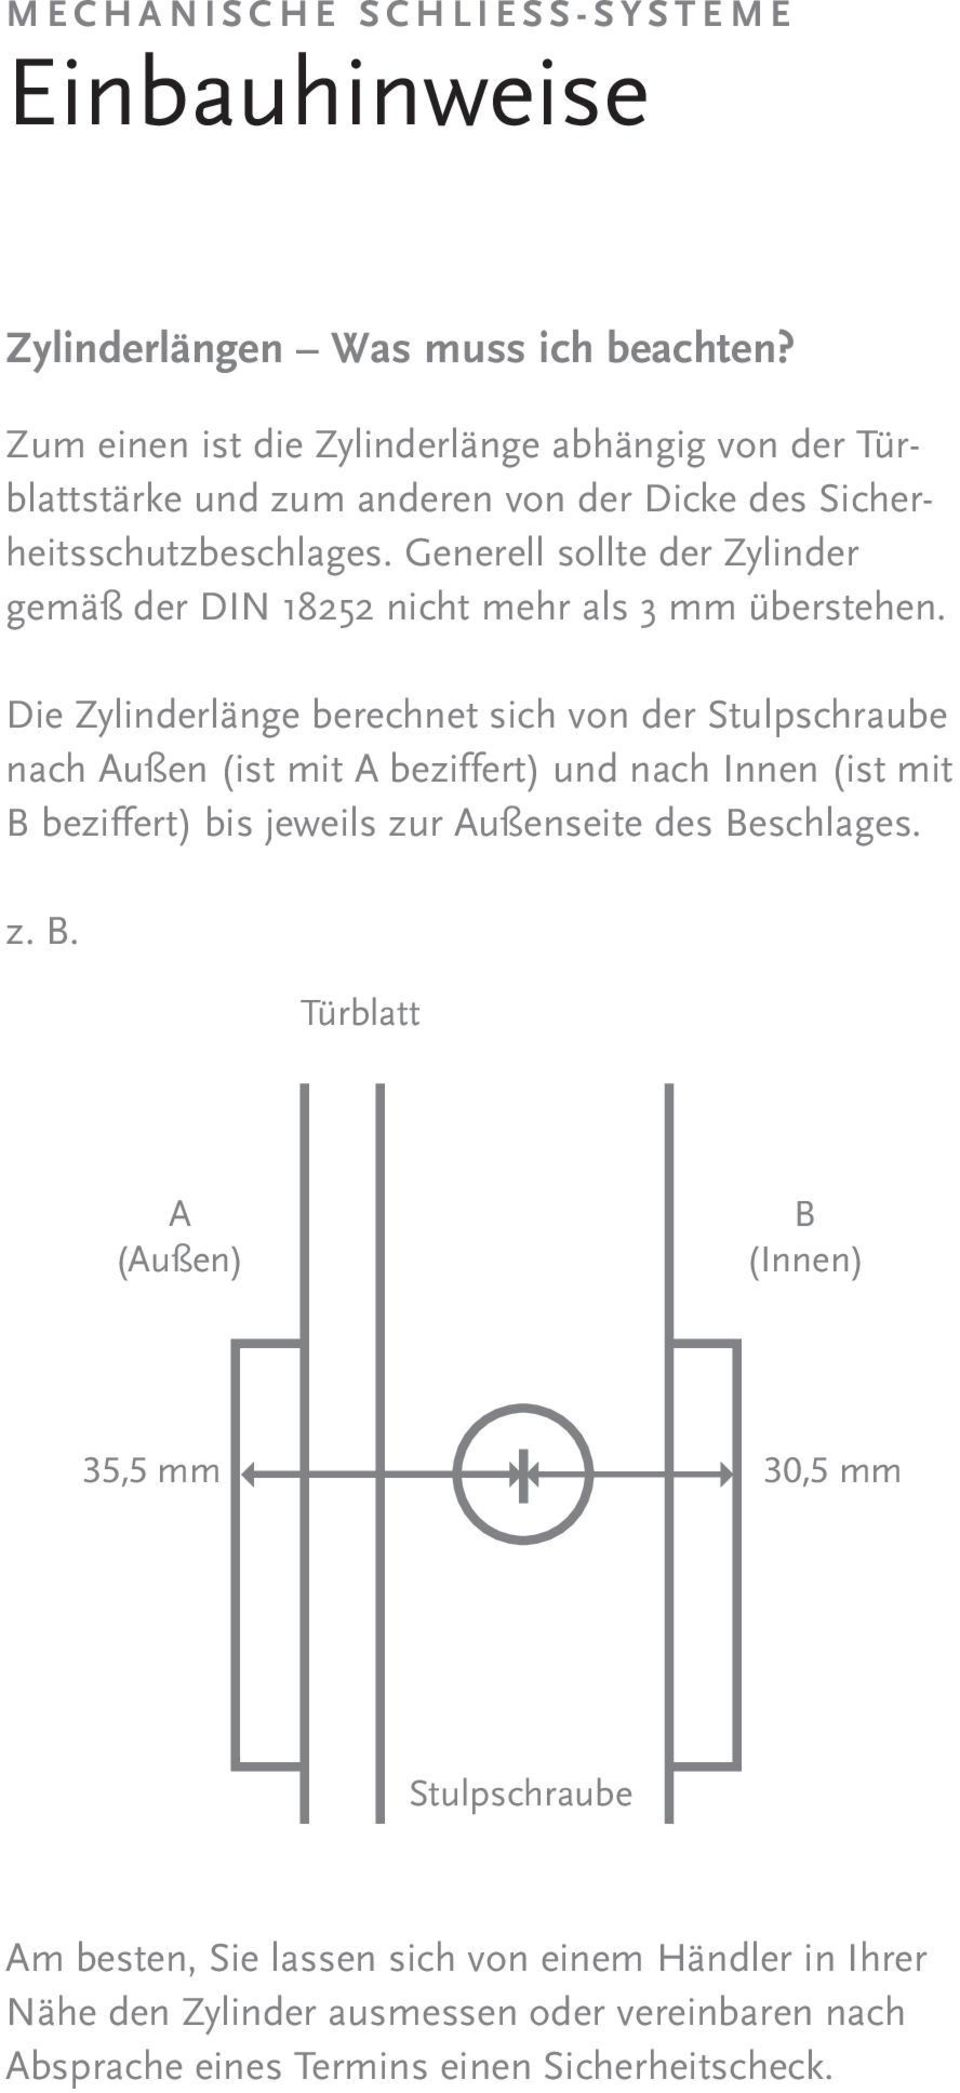 Generell sollte der Zylinder gemäß der DIN 18252 nicht mehr als 3 mm überstehen.